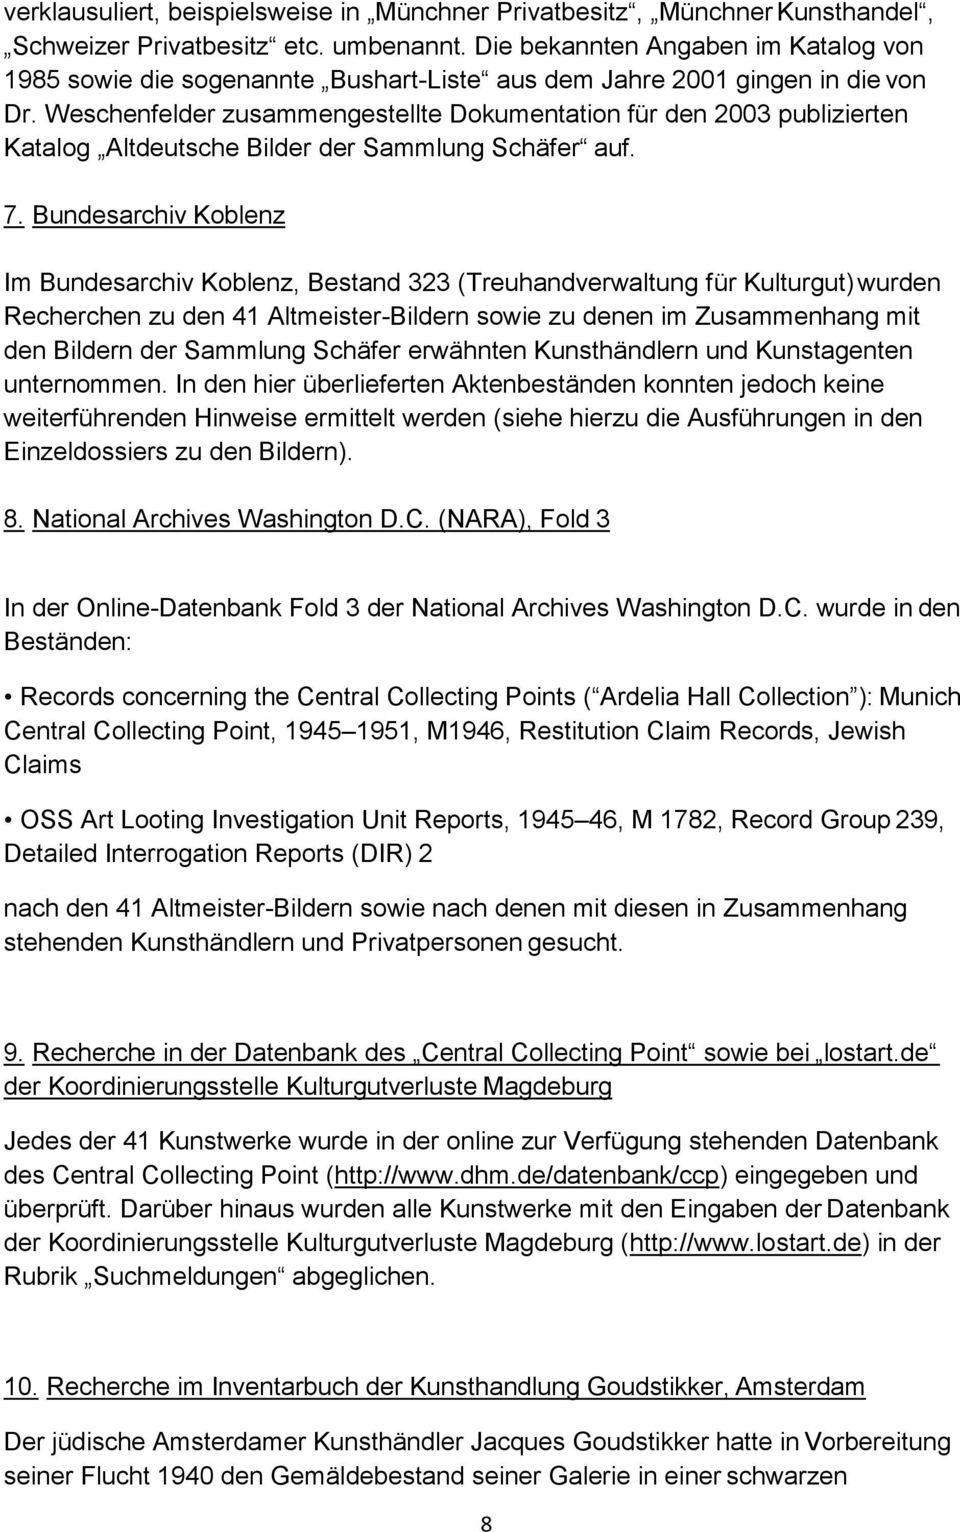 Weschenfelder zusammengestellte Dokumentation für den 2003 publizierten Katalog Altdeutsche Bilder der Sammlung Schäfer auf. 7.